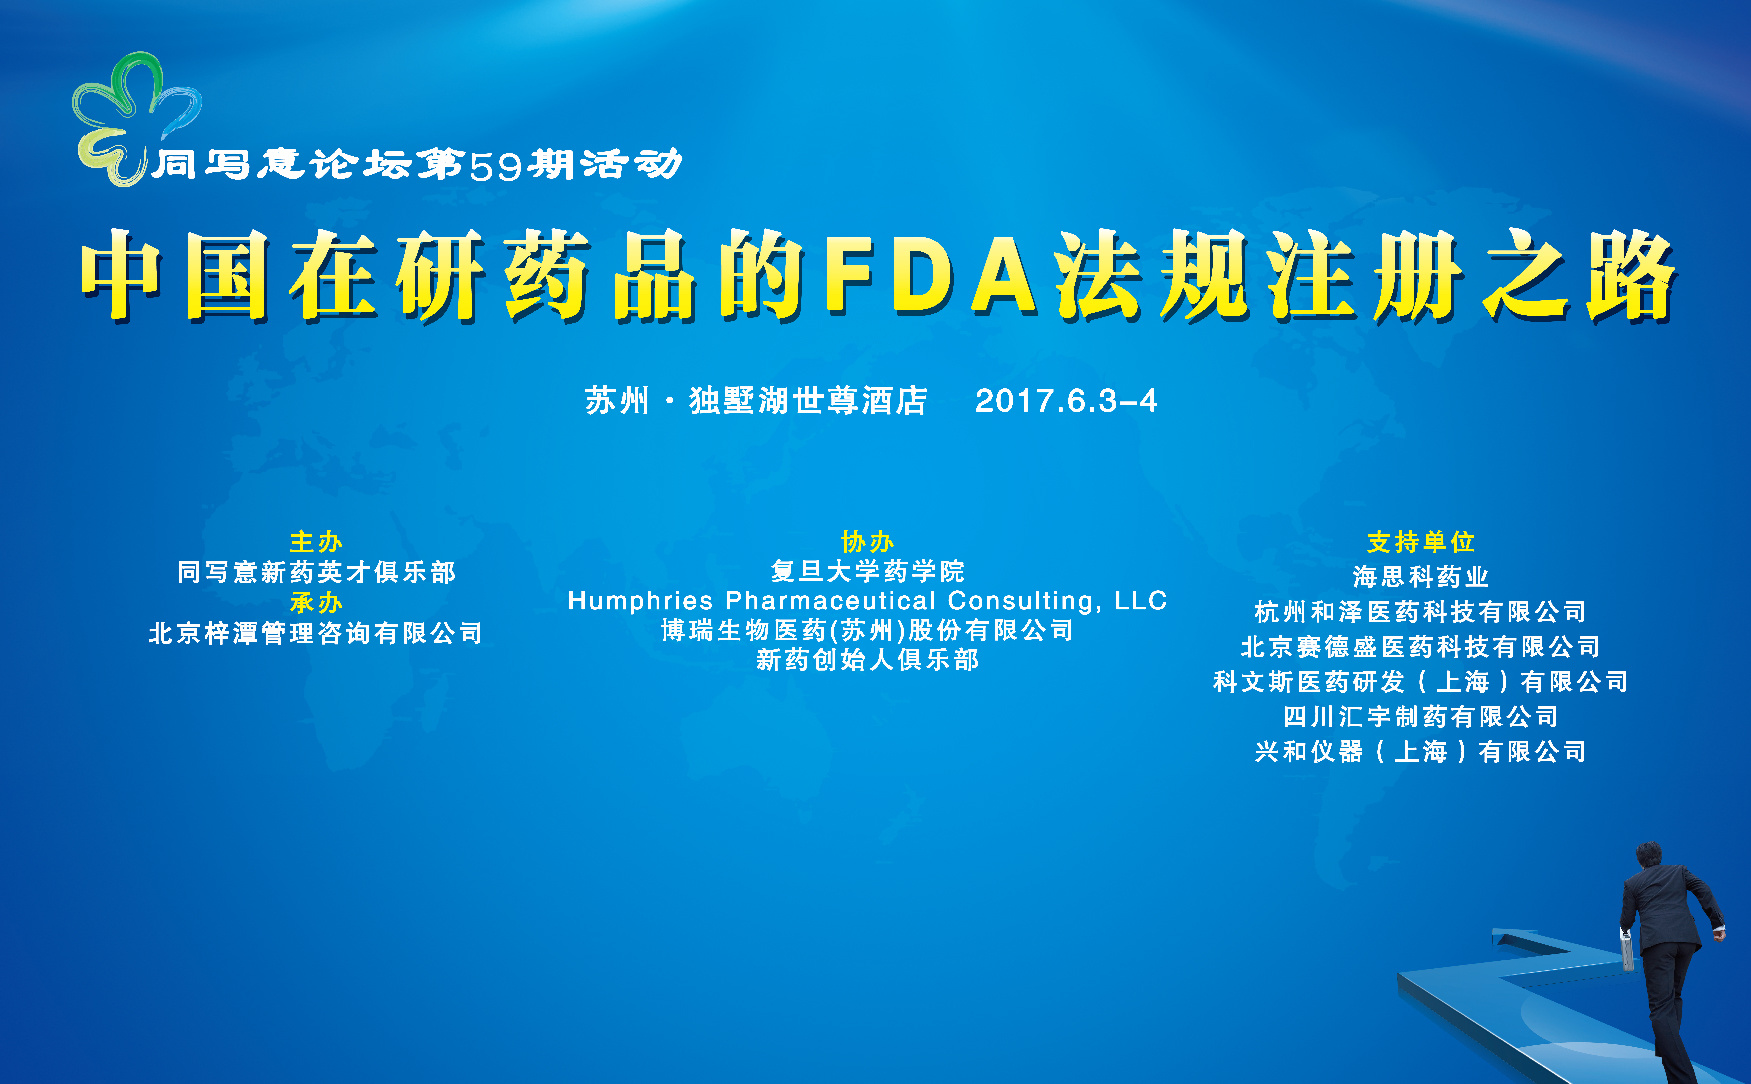 同写意论坛第59期 | 中国在研药品的FDA法规注册之路（第二天）